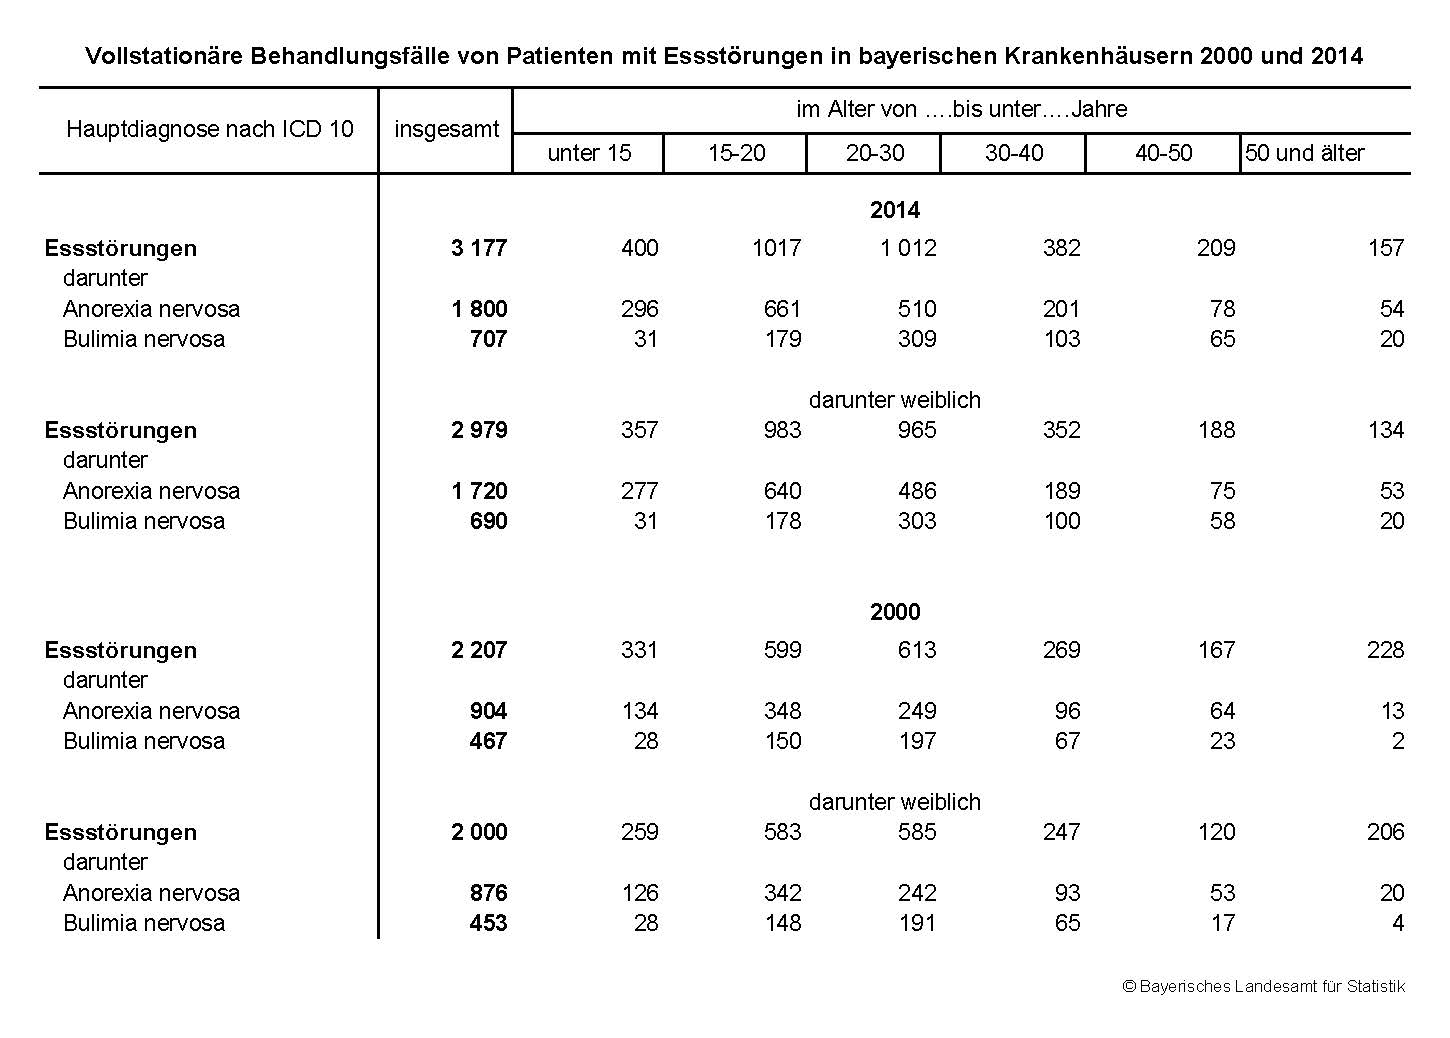 Vollstationäre Behandlungsfälle von Patienten mit Essstörungen in bayerischen Krankenhäusern 2000 und 2014